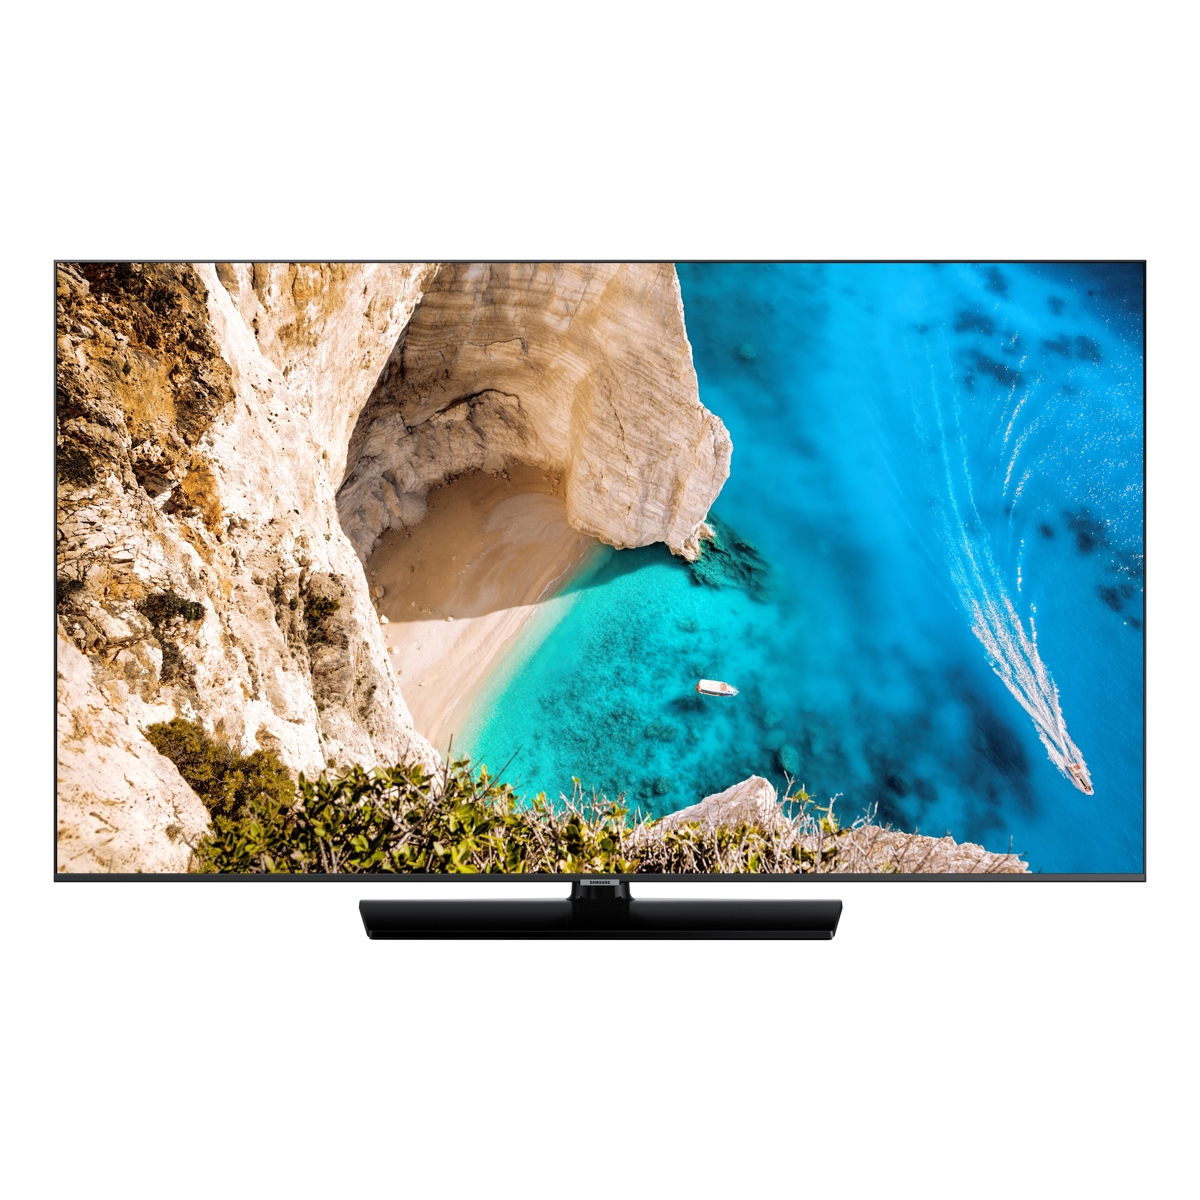 Samsung 55 Smart LED-LCD Hospitality TV - 4K UHDTV - LED HG55NJ690UF